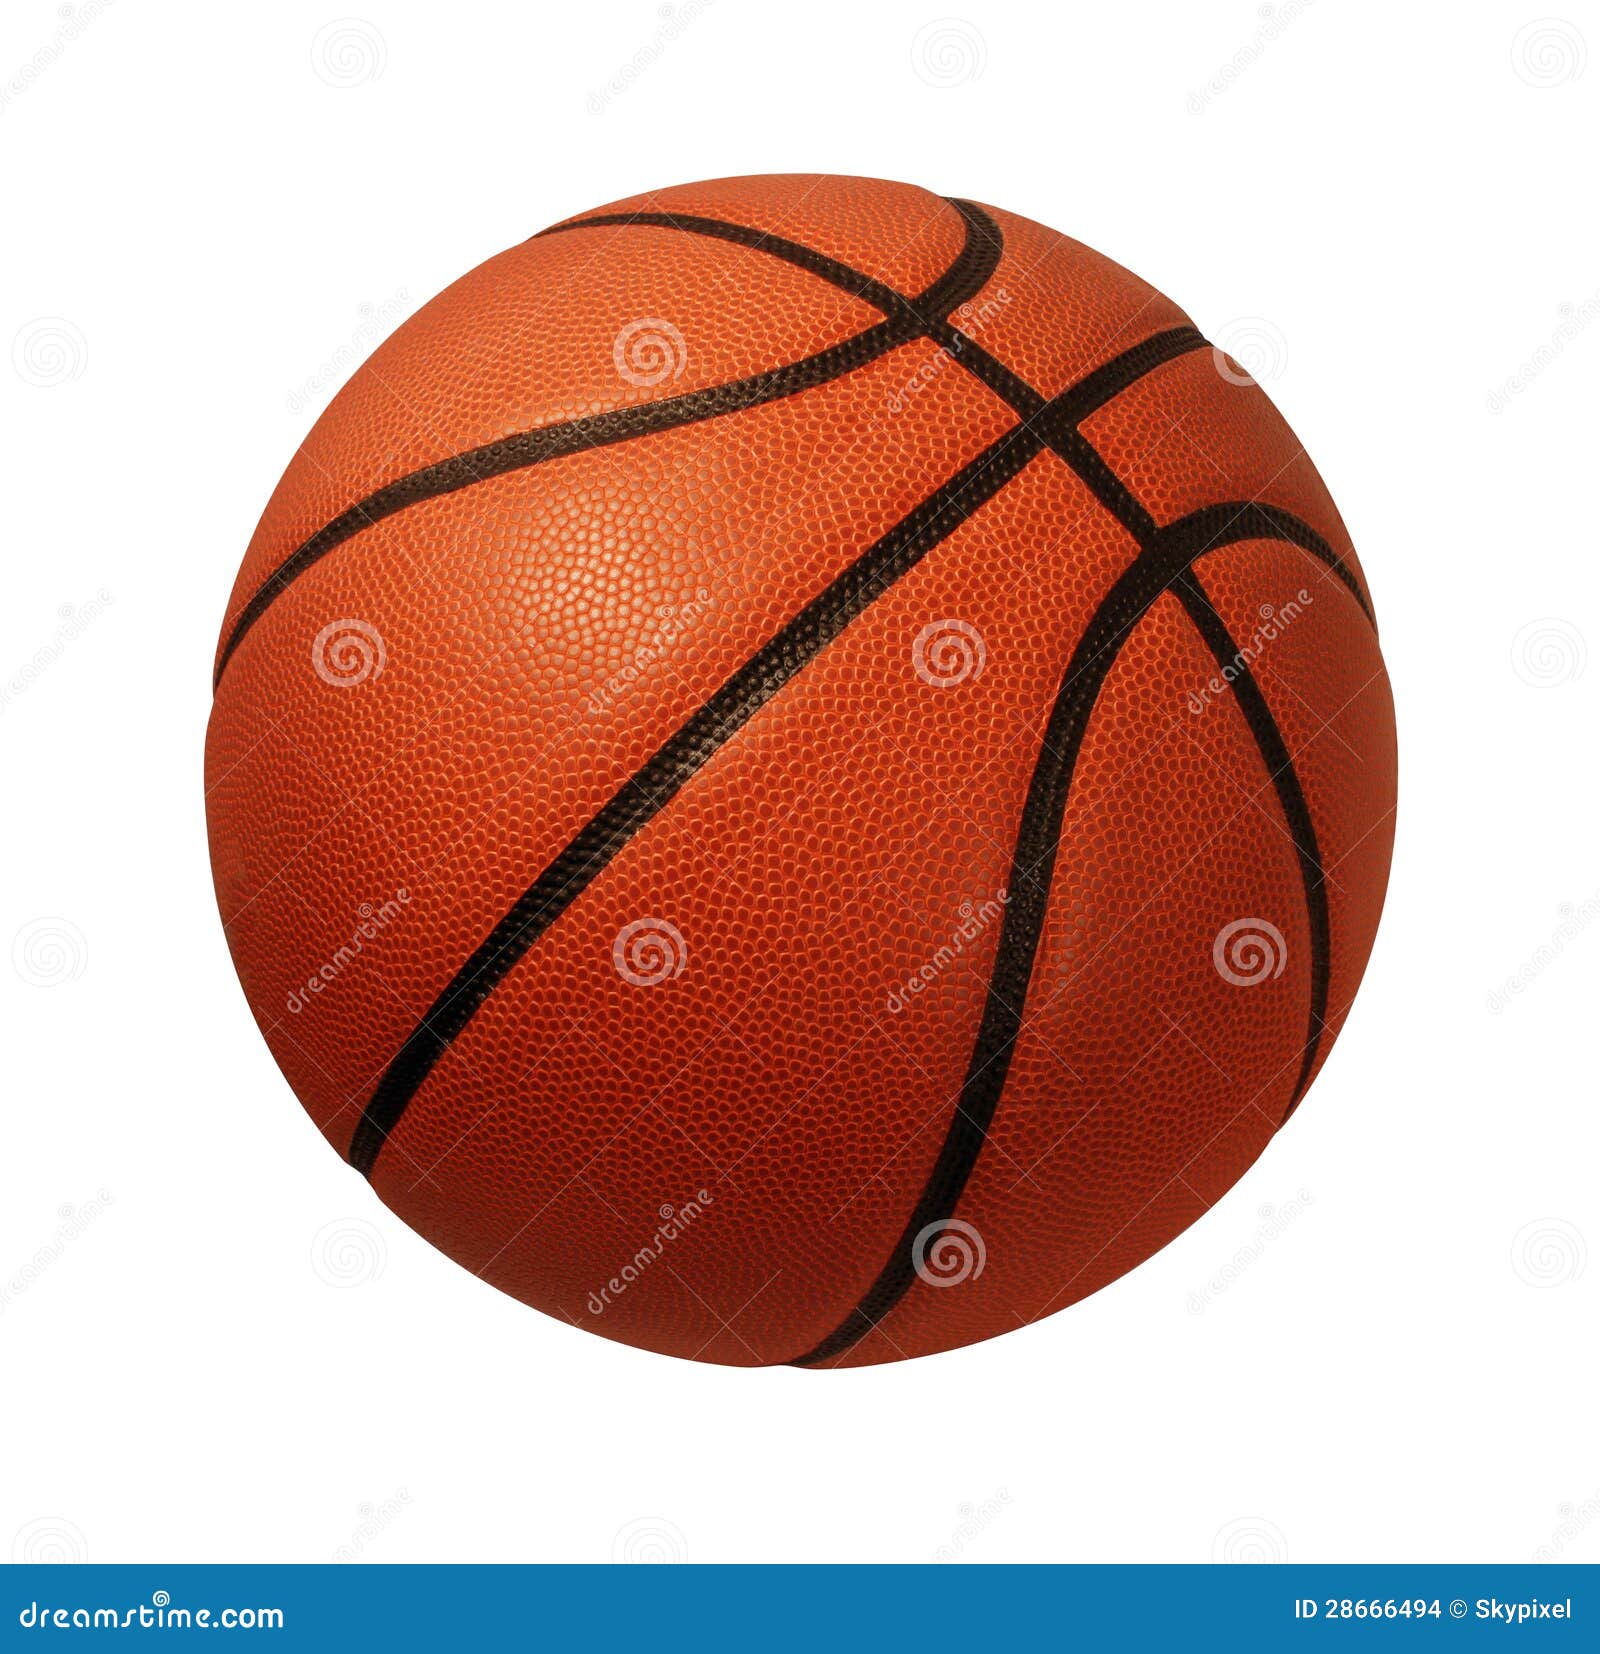 372,151 en la categoría «Balones de baloncesto» de imágenes, fotos de stock  e ilustraciones libres de regalías